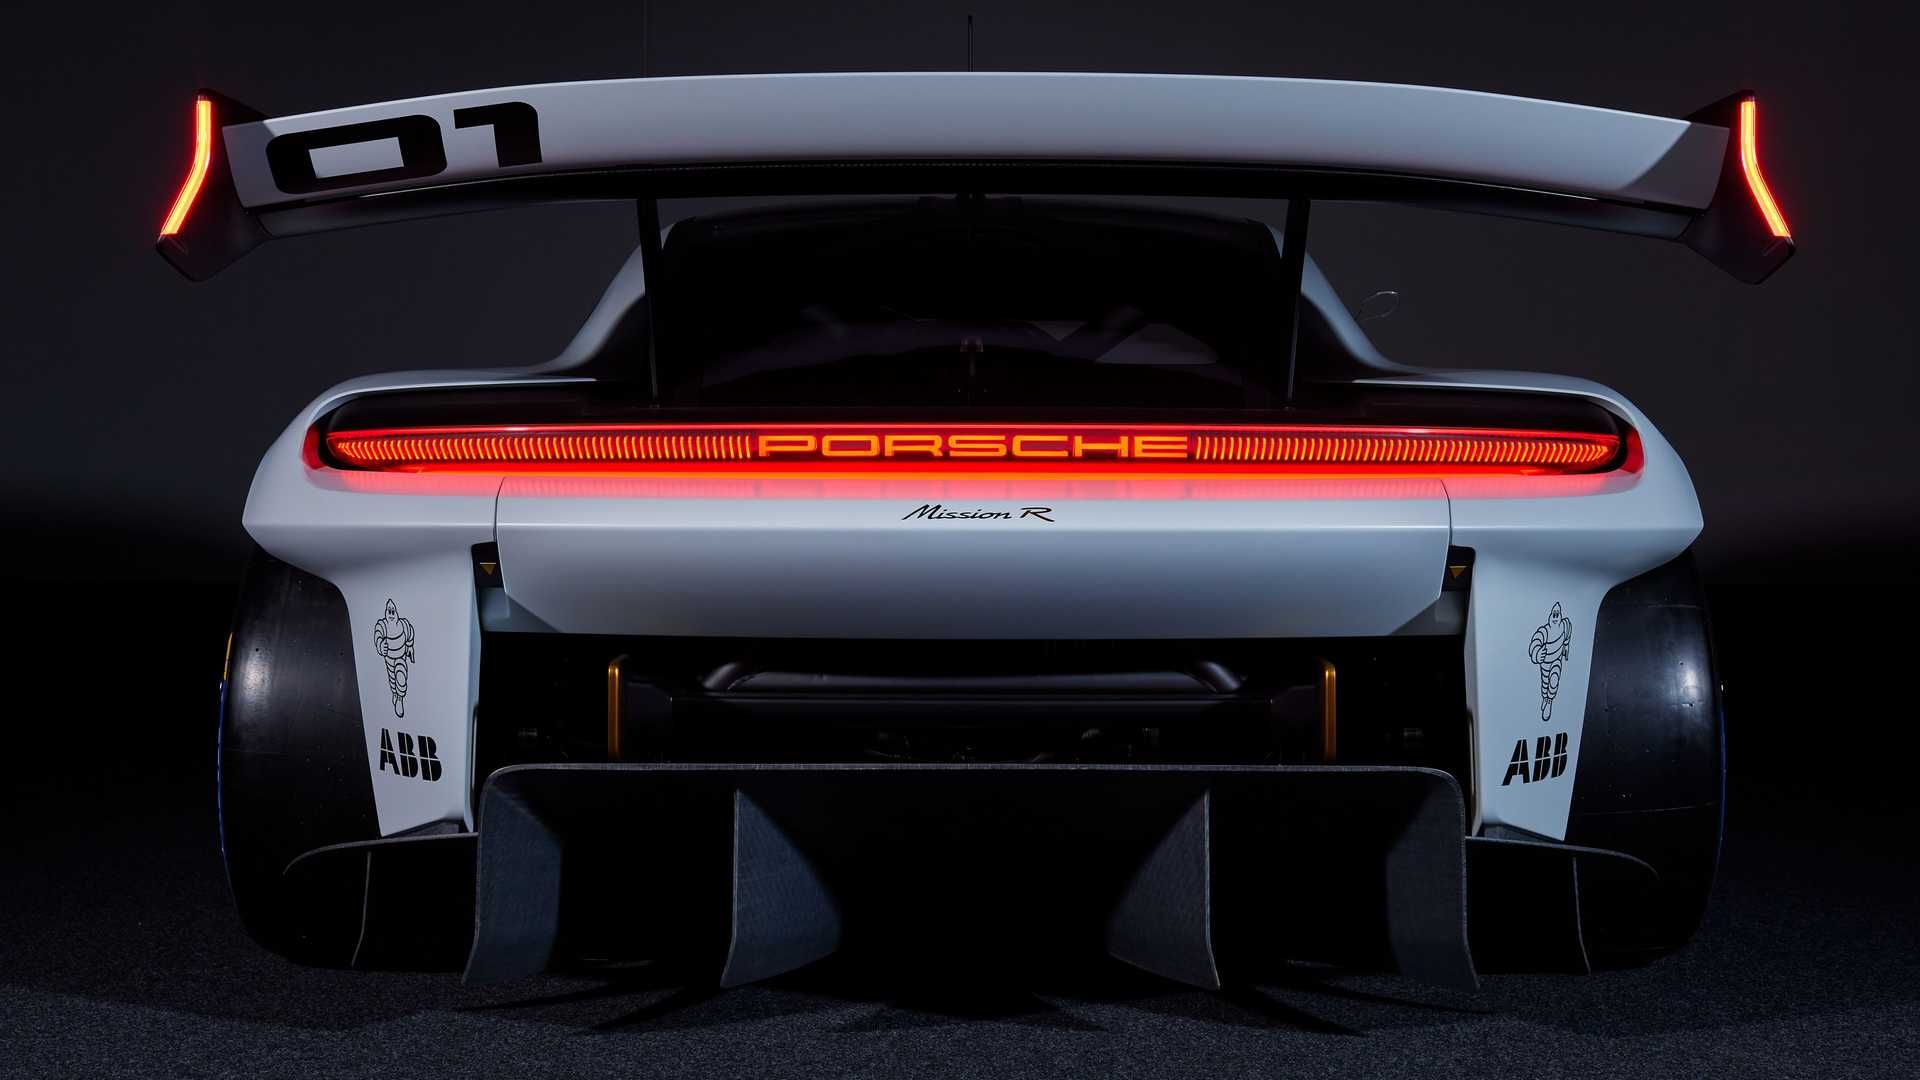 نمای عقب خودروی الکتریکی مفهومی پورشه میشن آر / Porsche Mission R Concept EV